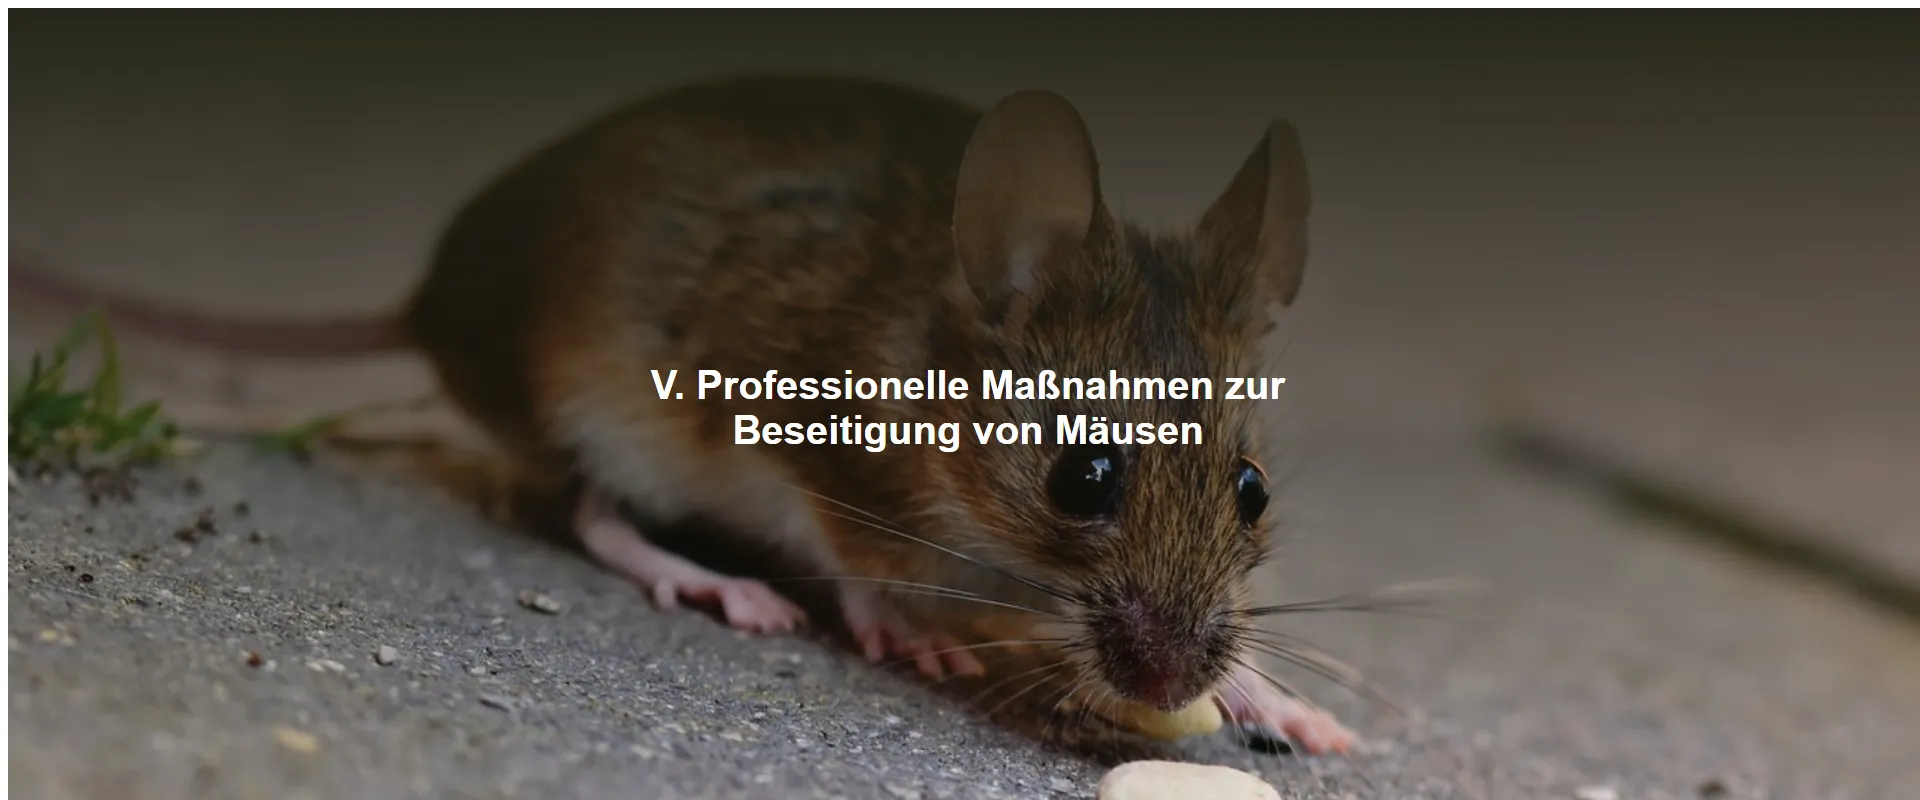 Professionelle Maßnahmen zur Beseitigung von Mäusen